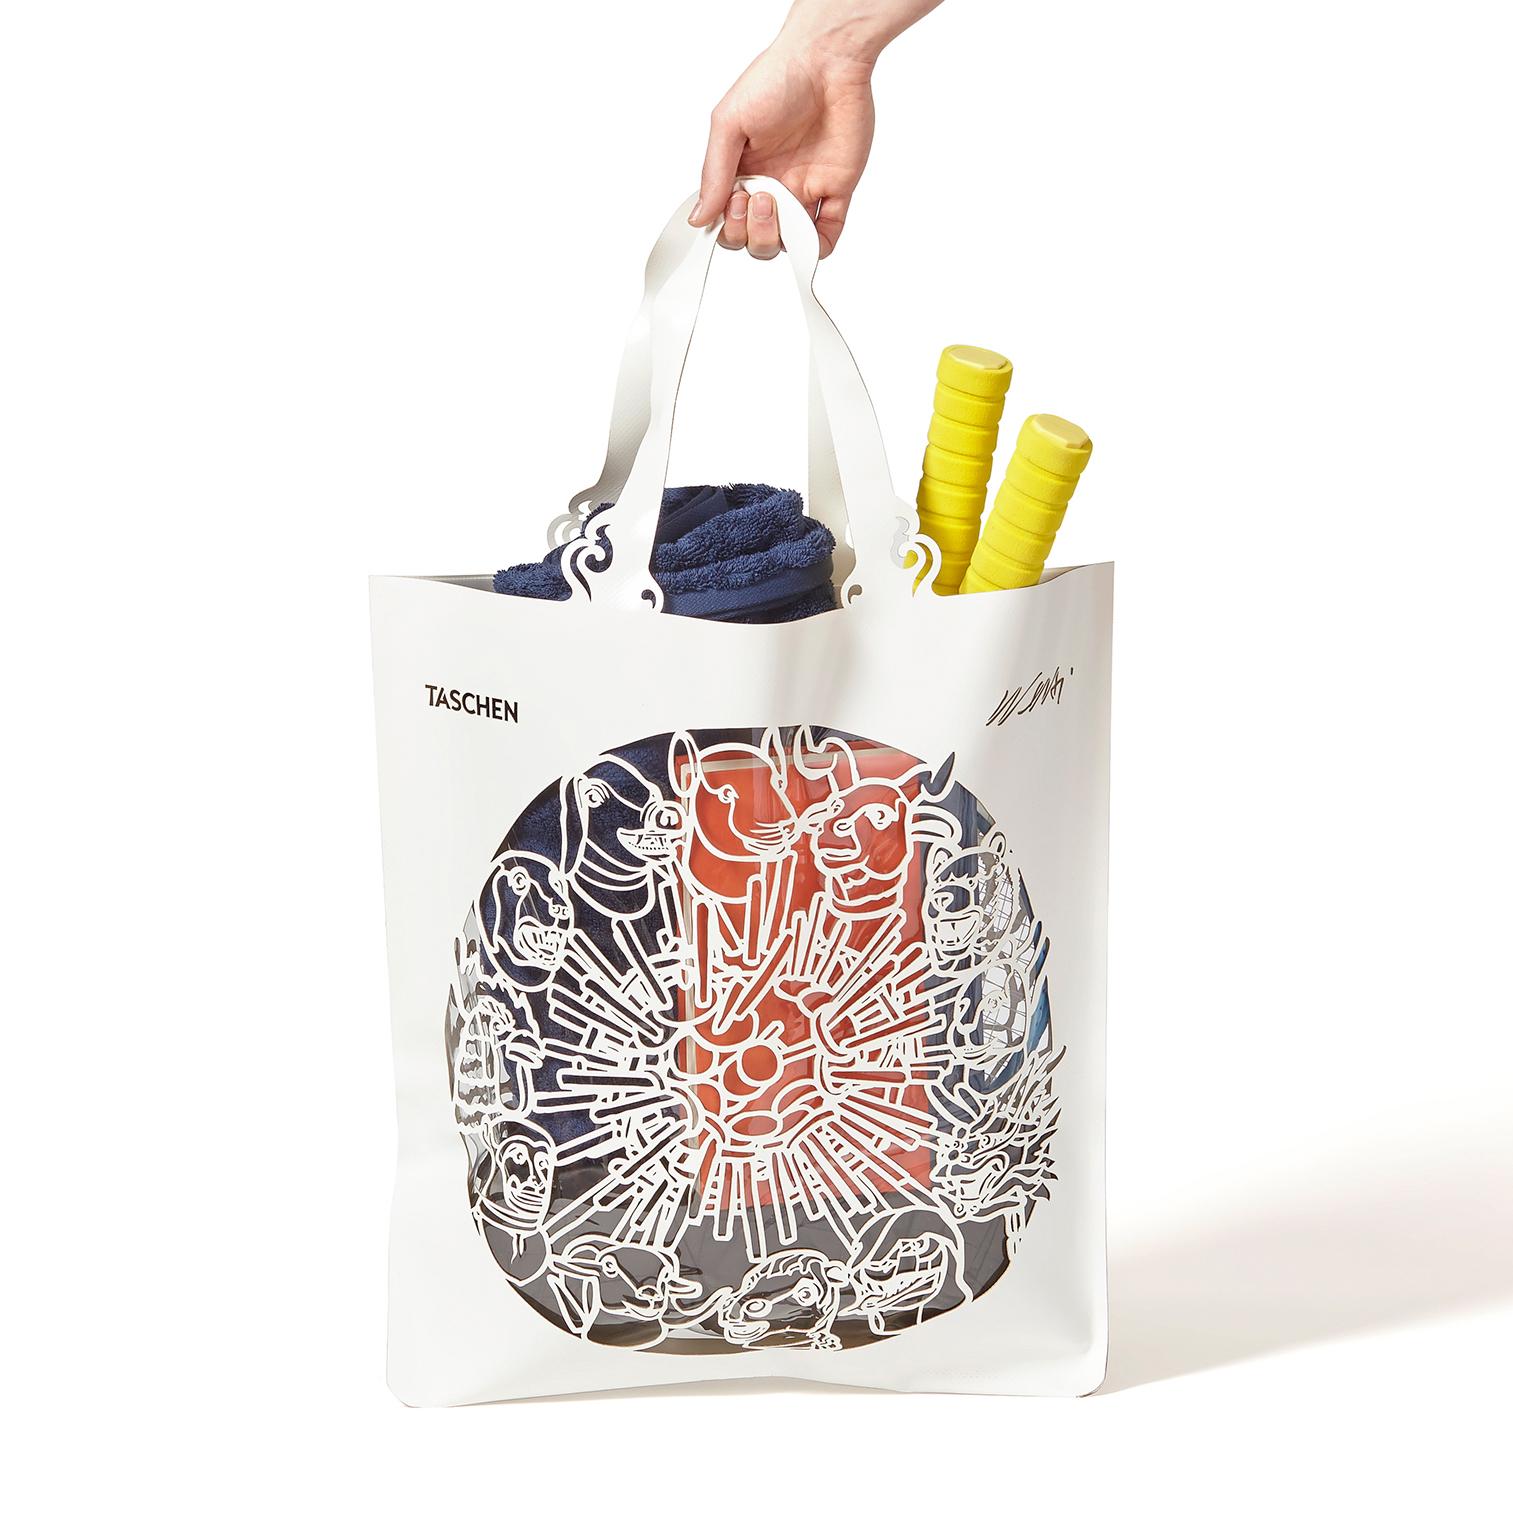 Weißer PVC-Beutel mit transparenter Einlage
Maße: 18,5 x 25,4 Zoll (ohne Griffe)
Auflage von 2,500 Stück
Individueller Geschenkkarton

Diese Tasche von Ai Weiwei in limitierter Auflage ist nicht nur die ultimative Tasche für den Strand und das